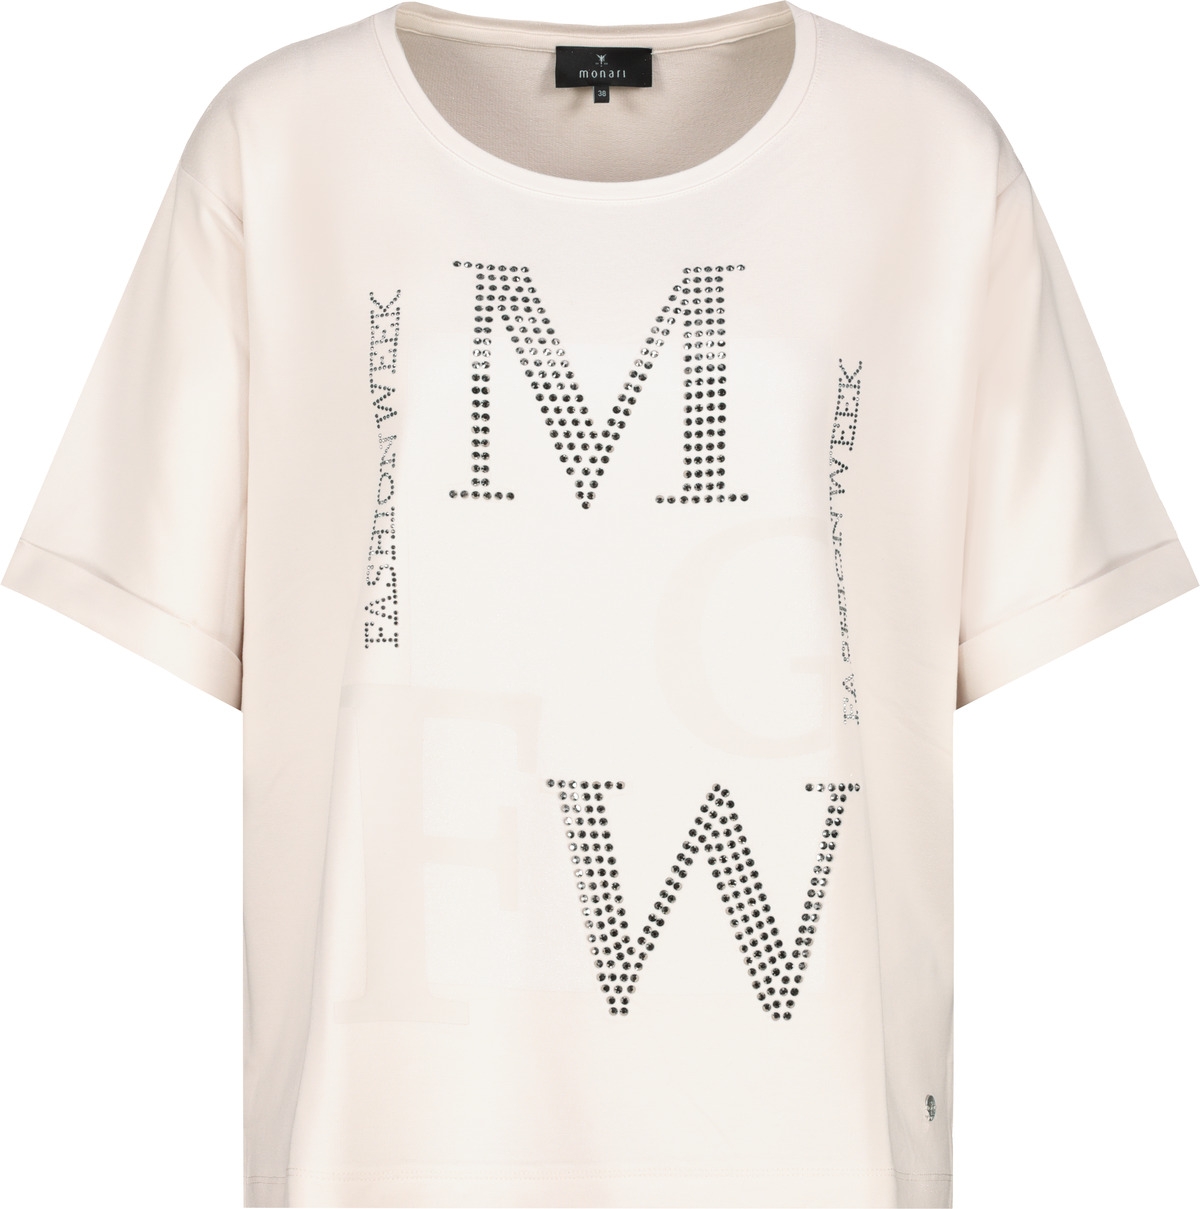 MONARI T-Shirt mit Glitzer Buchstaben 10756360